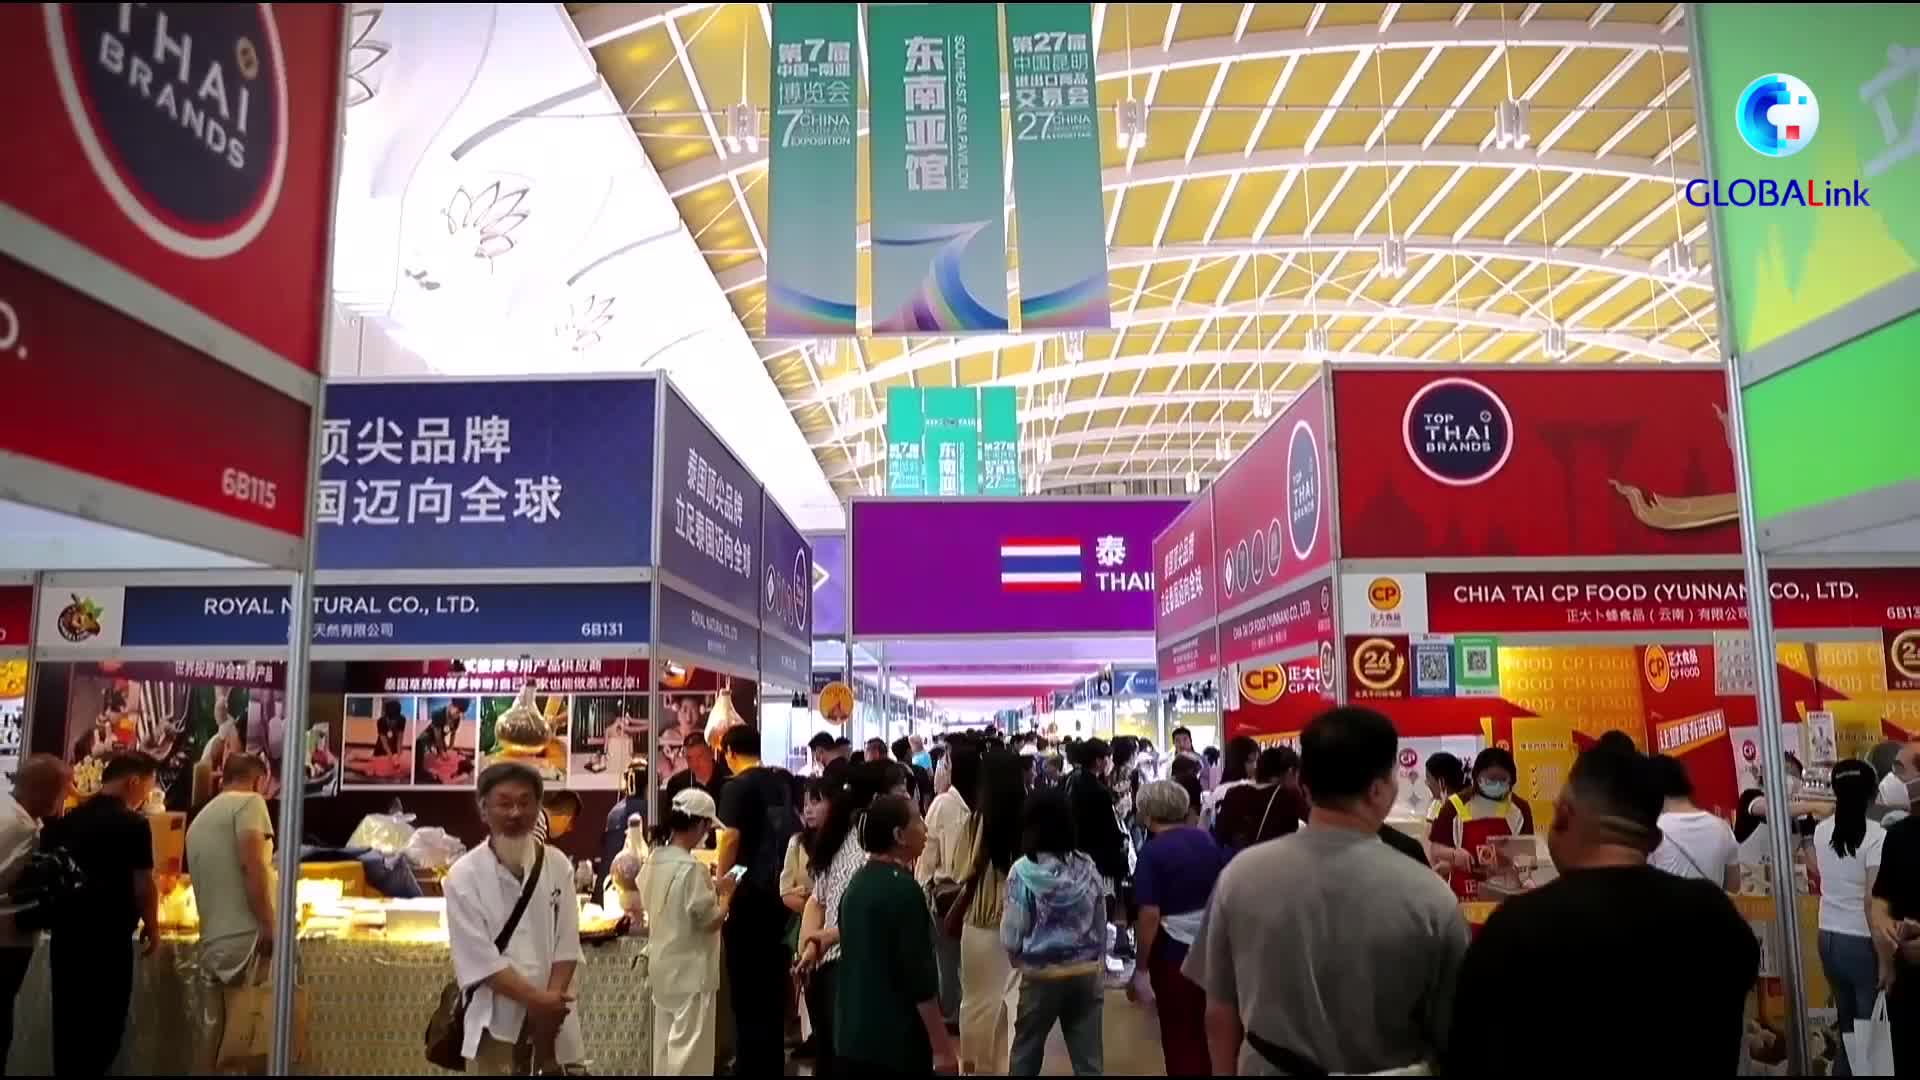 GLOBALink : การเดินทางของ 'ทุเรียน' จากไทยสู่งานแสดงสินค้าจีน-เอเชียใต้